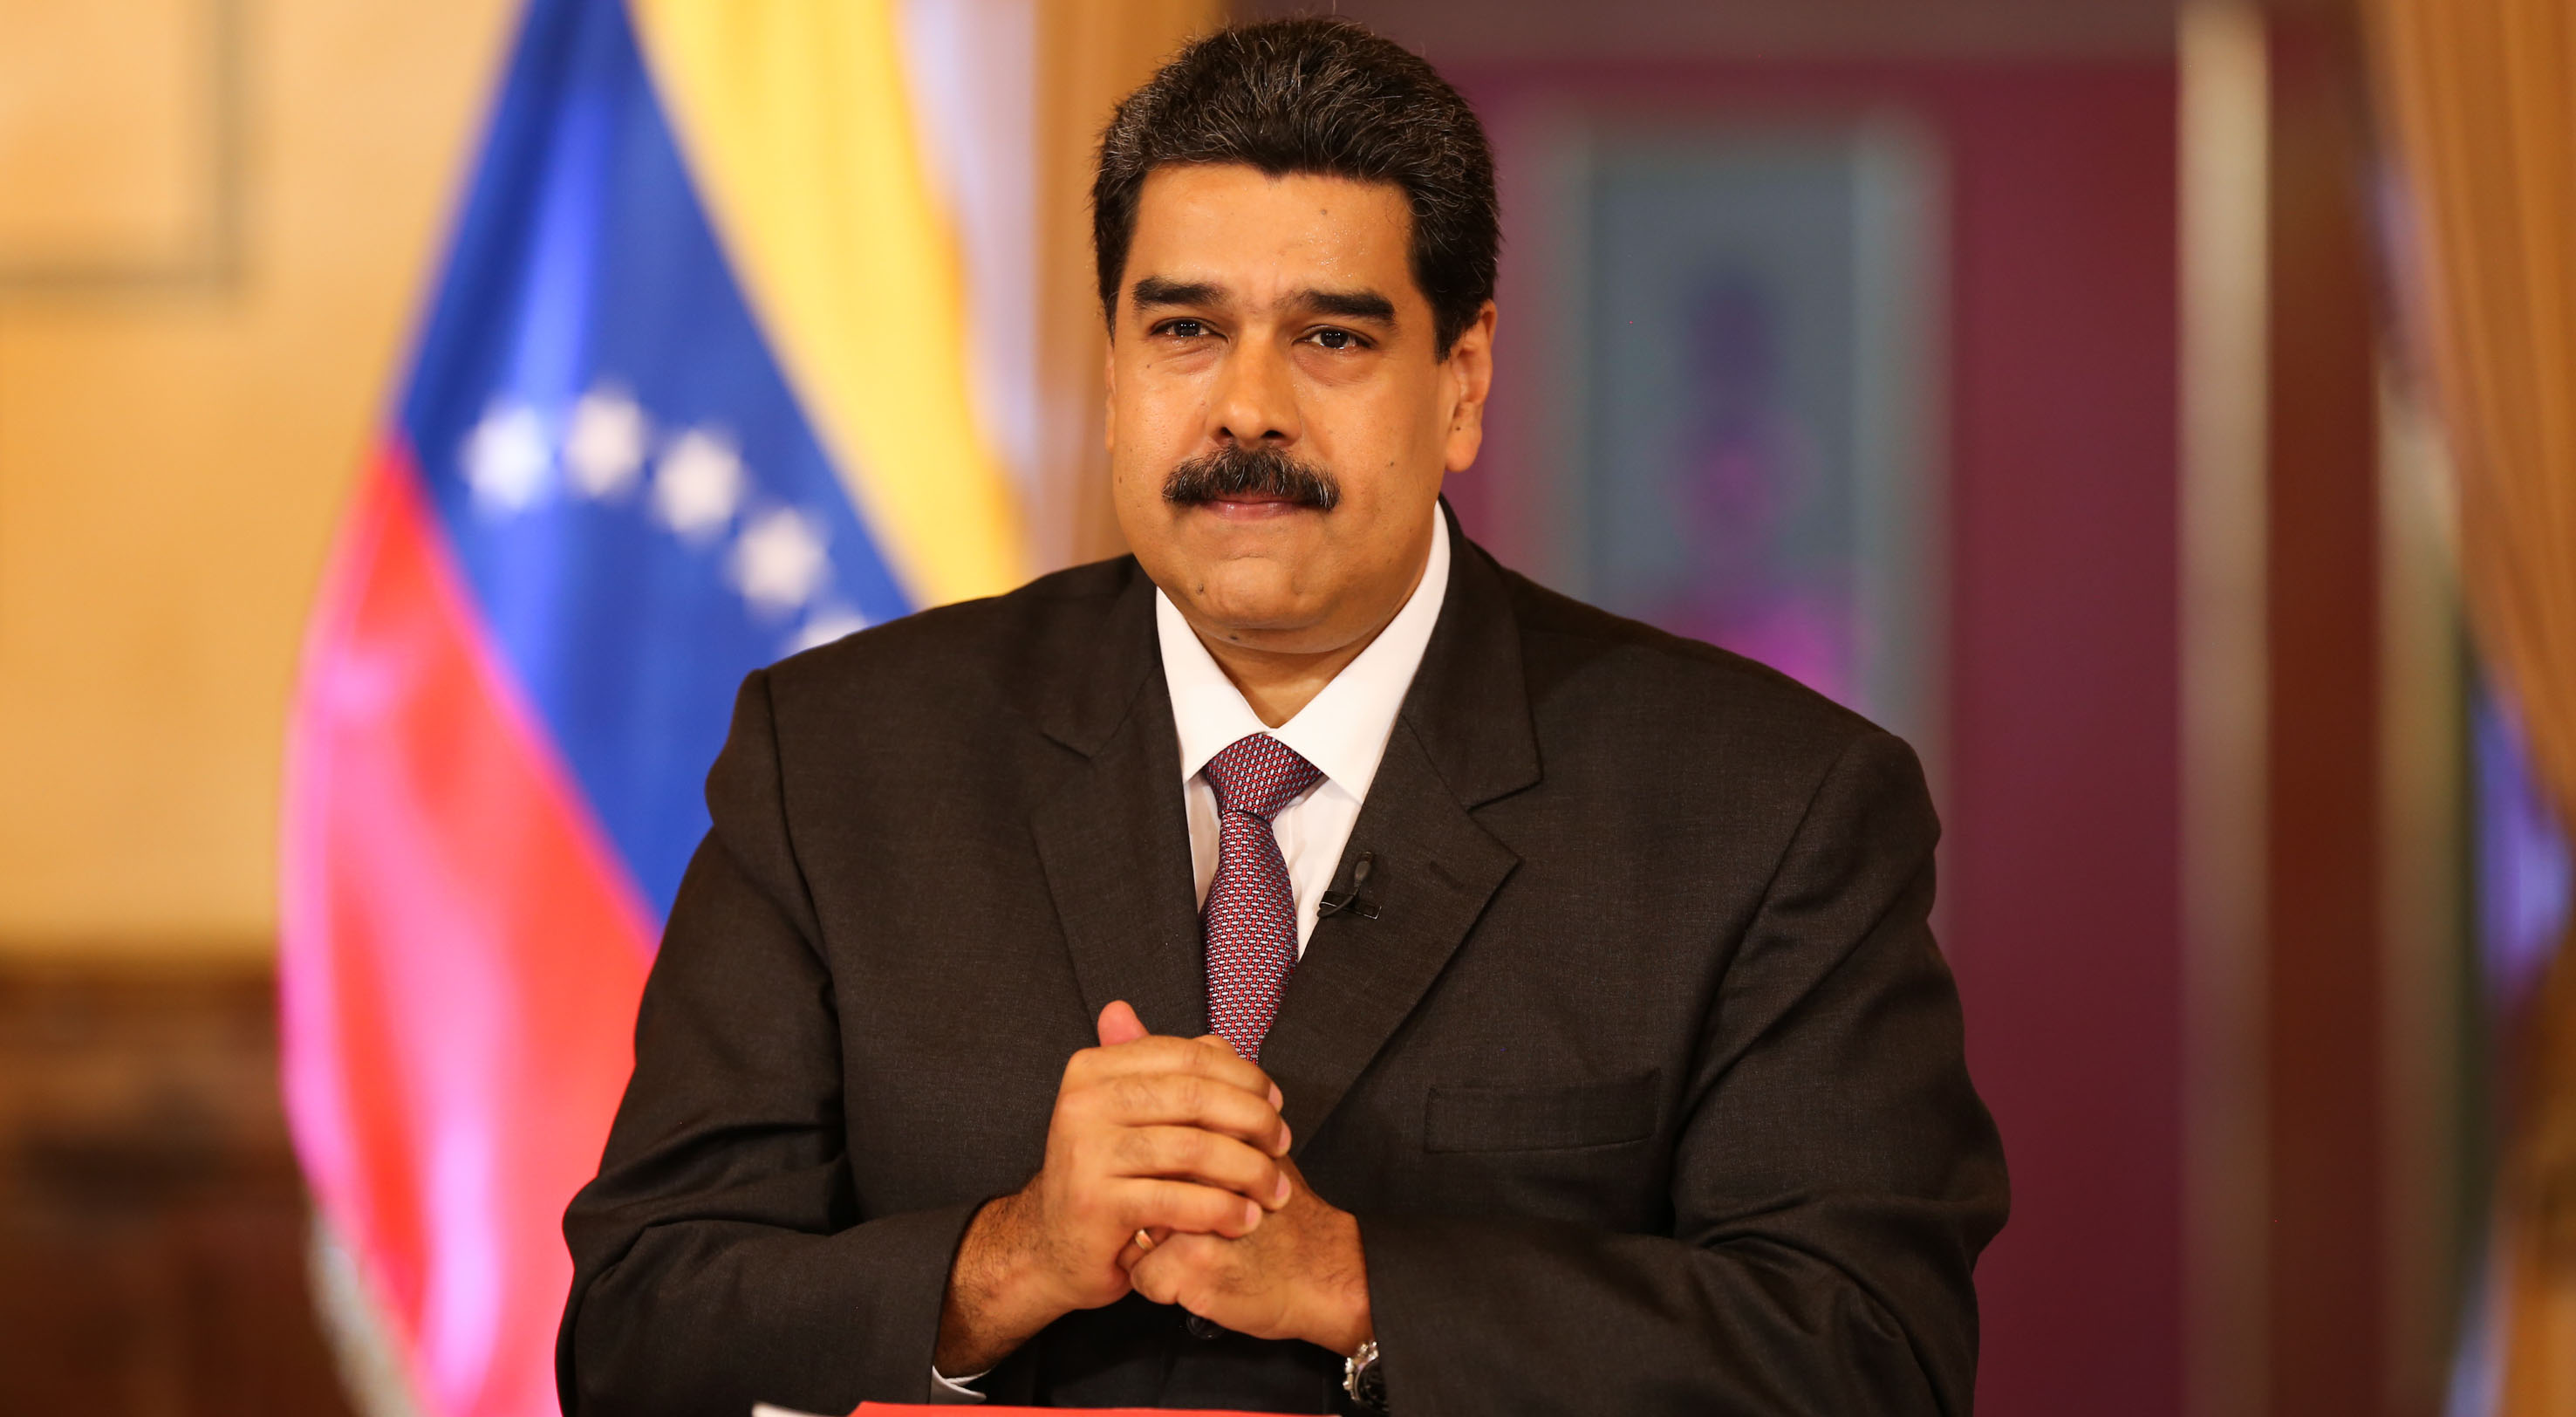 Maduro expresó su deseos de continuar fortaleciendo los lazos de amistad y cooperación entre ambas naciones.